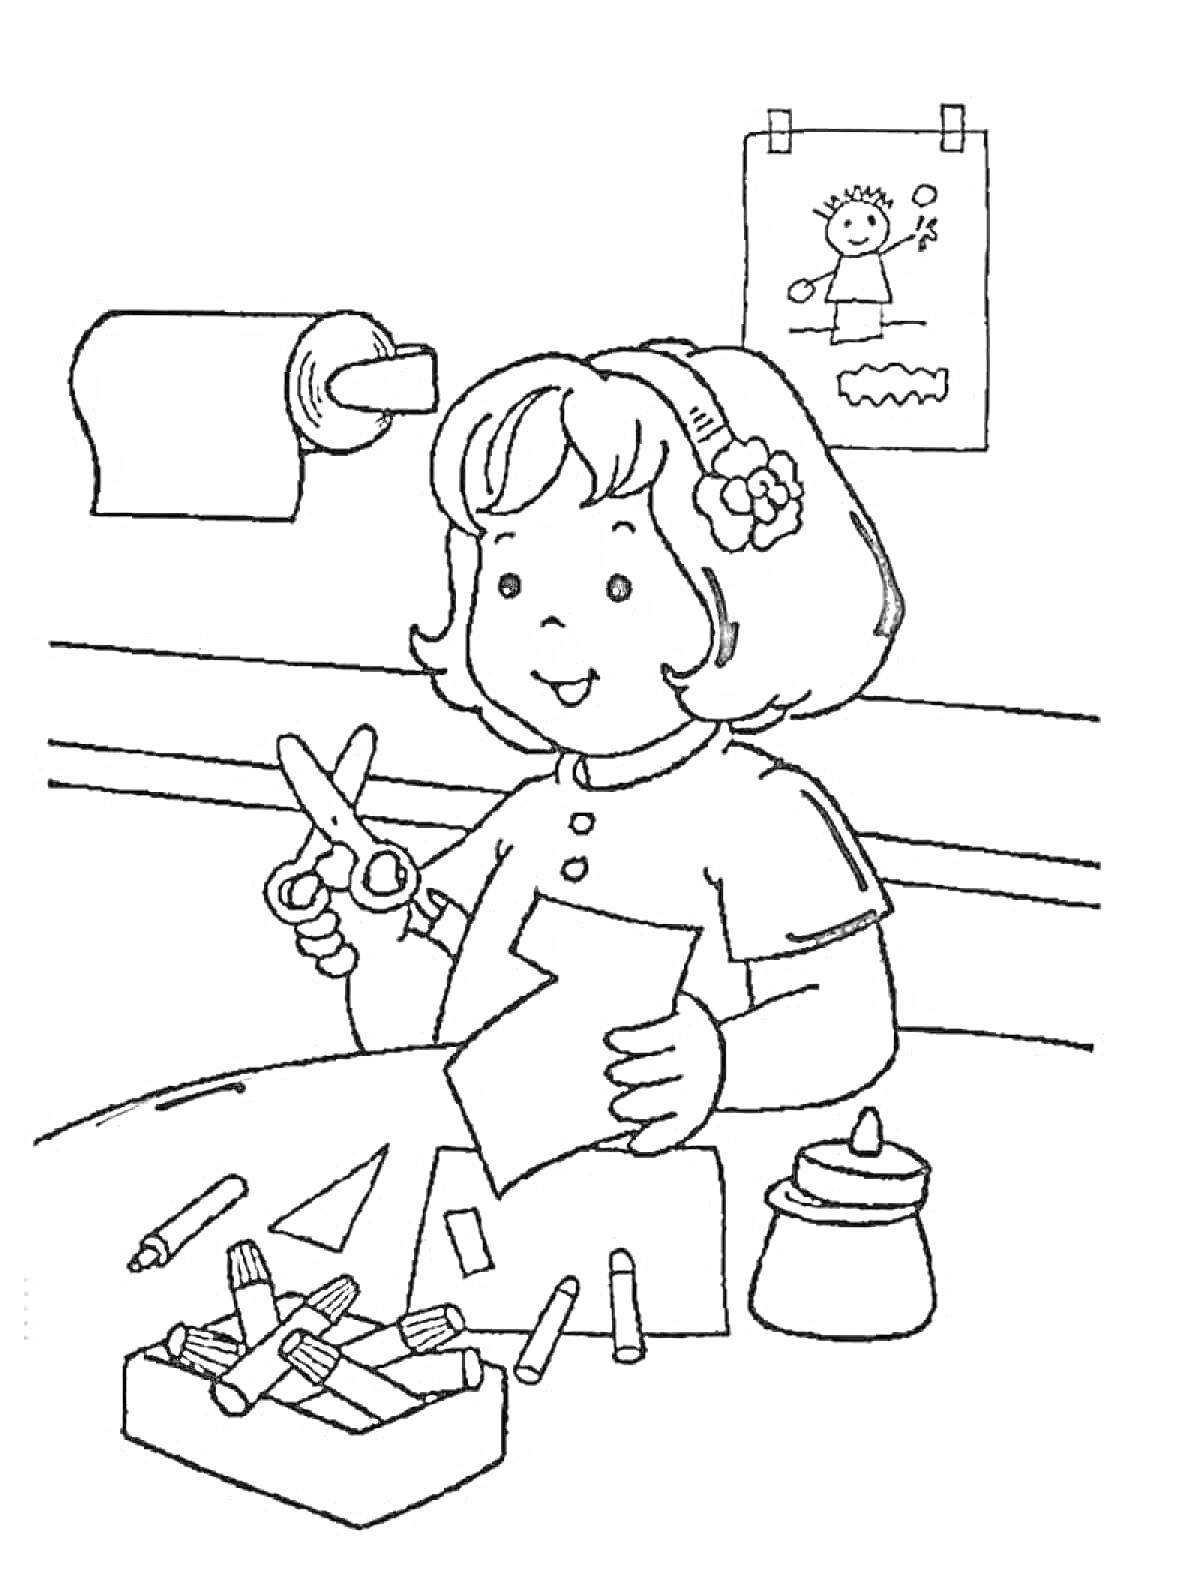 Девочка, занимающаяся поделками: ножницы, бумага, карандаши, баночка с клеем, рисунок на стене